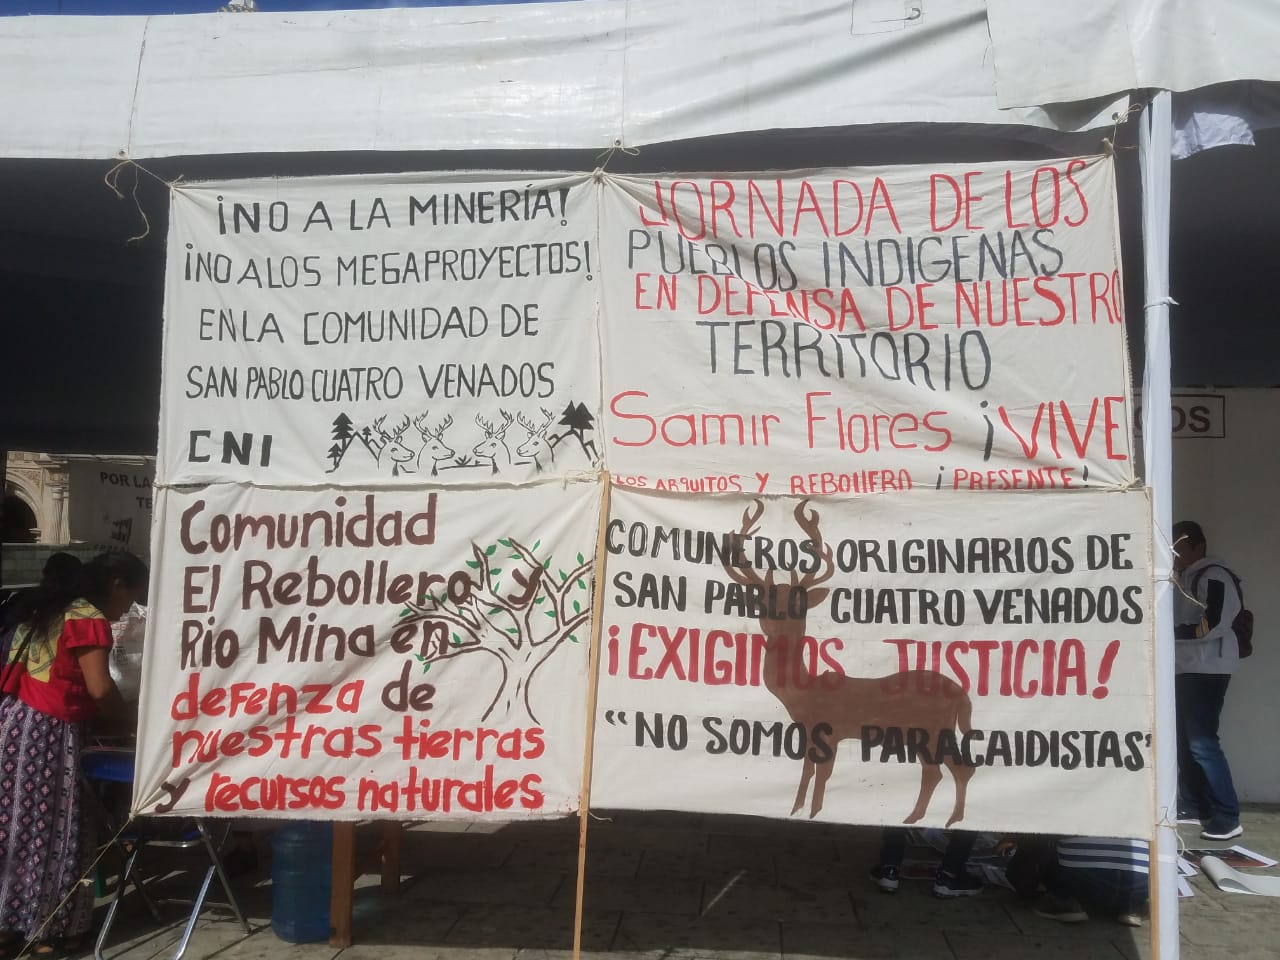 Alerta máxima en la comunidad de 4 Venados tras presencia del ejército (Oaxaca)